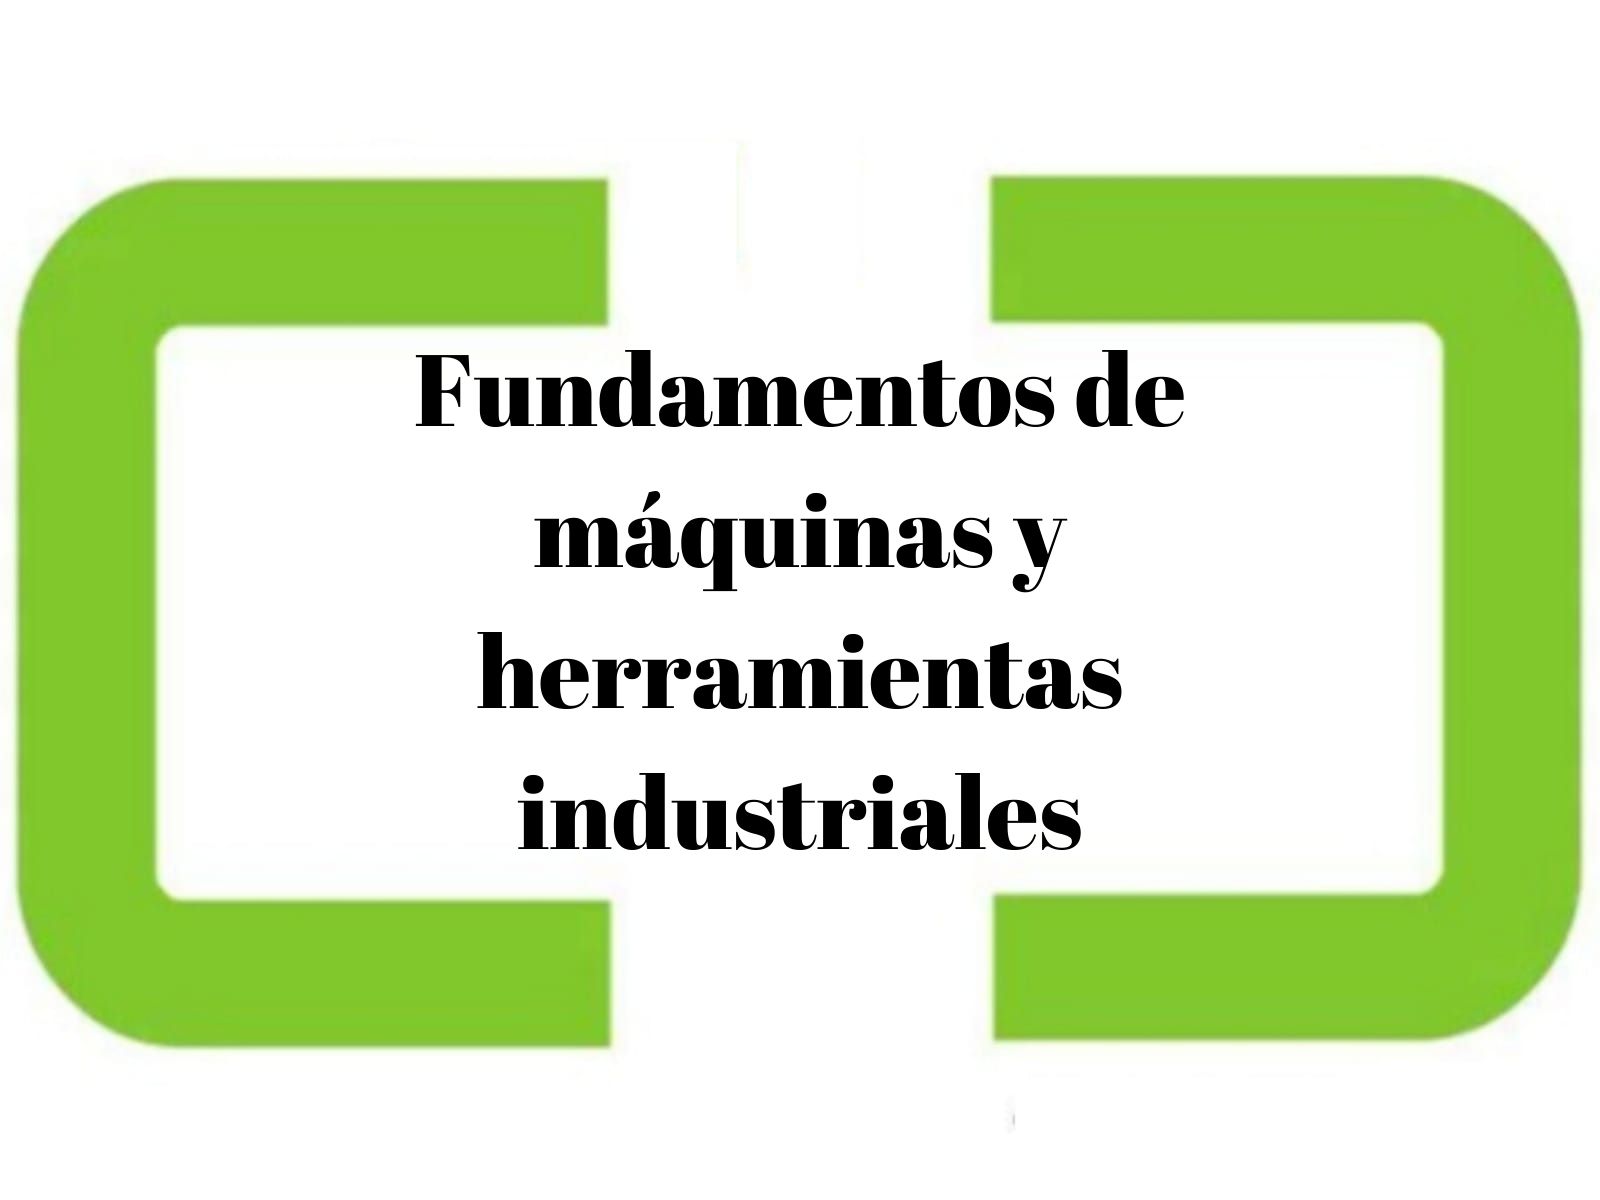 Fundamentos de maquinas y herramientas industriales